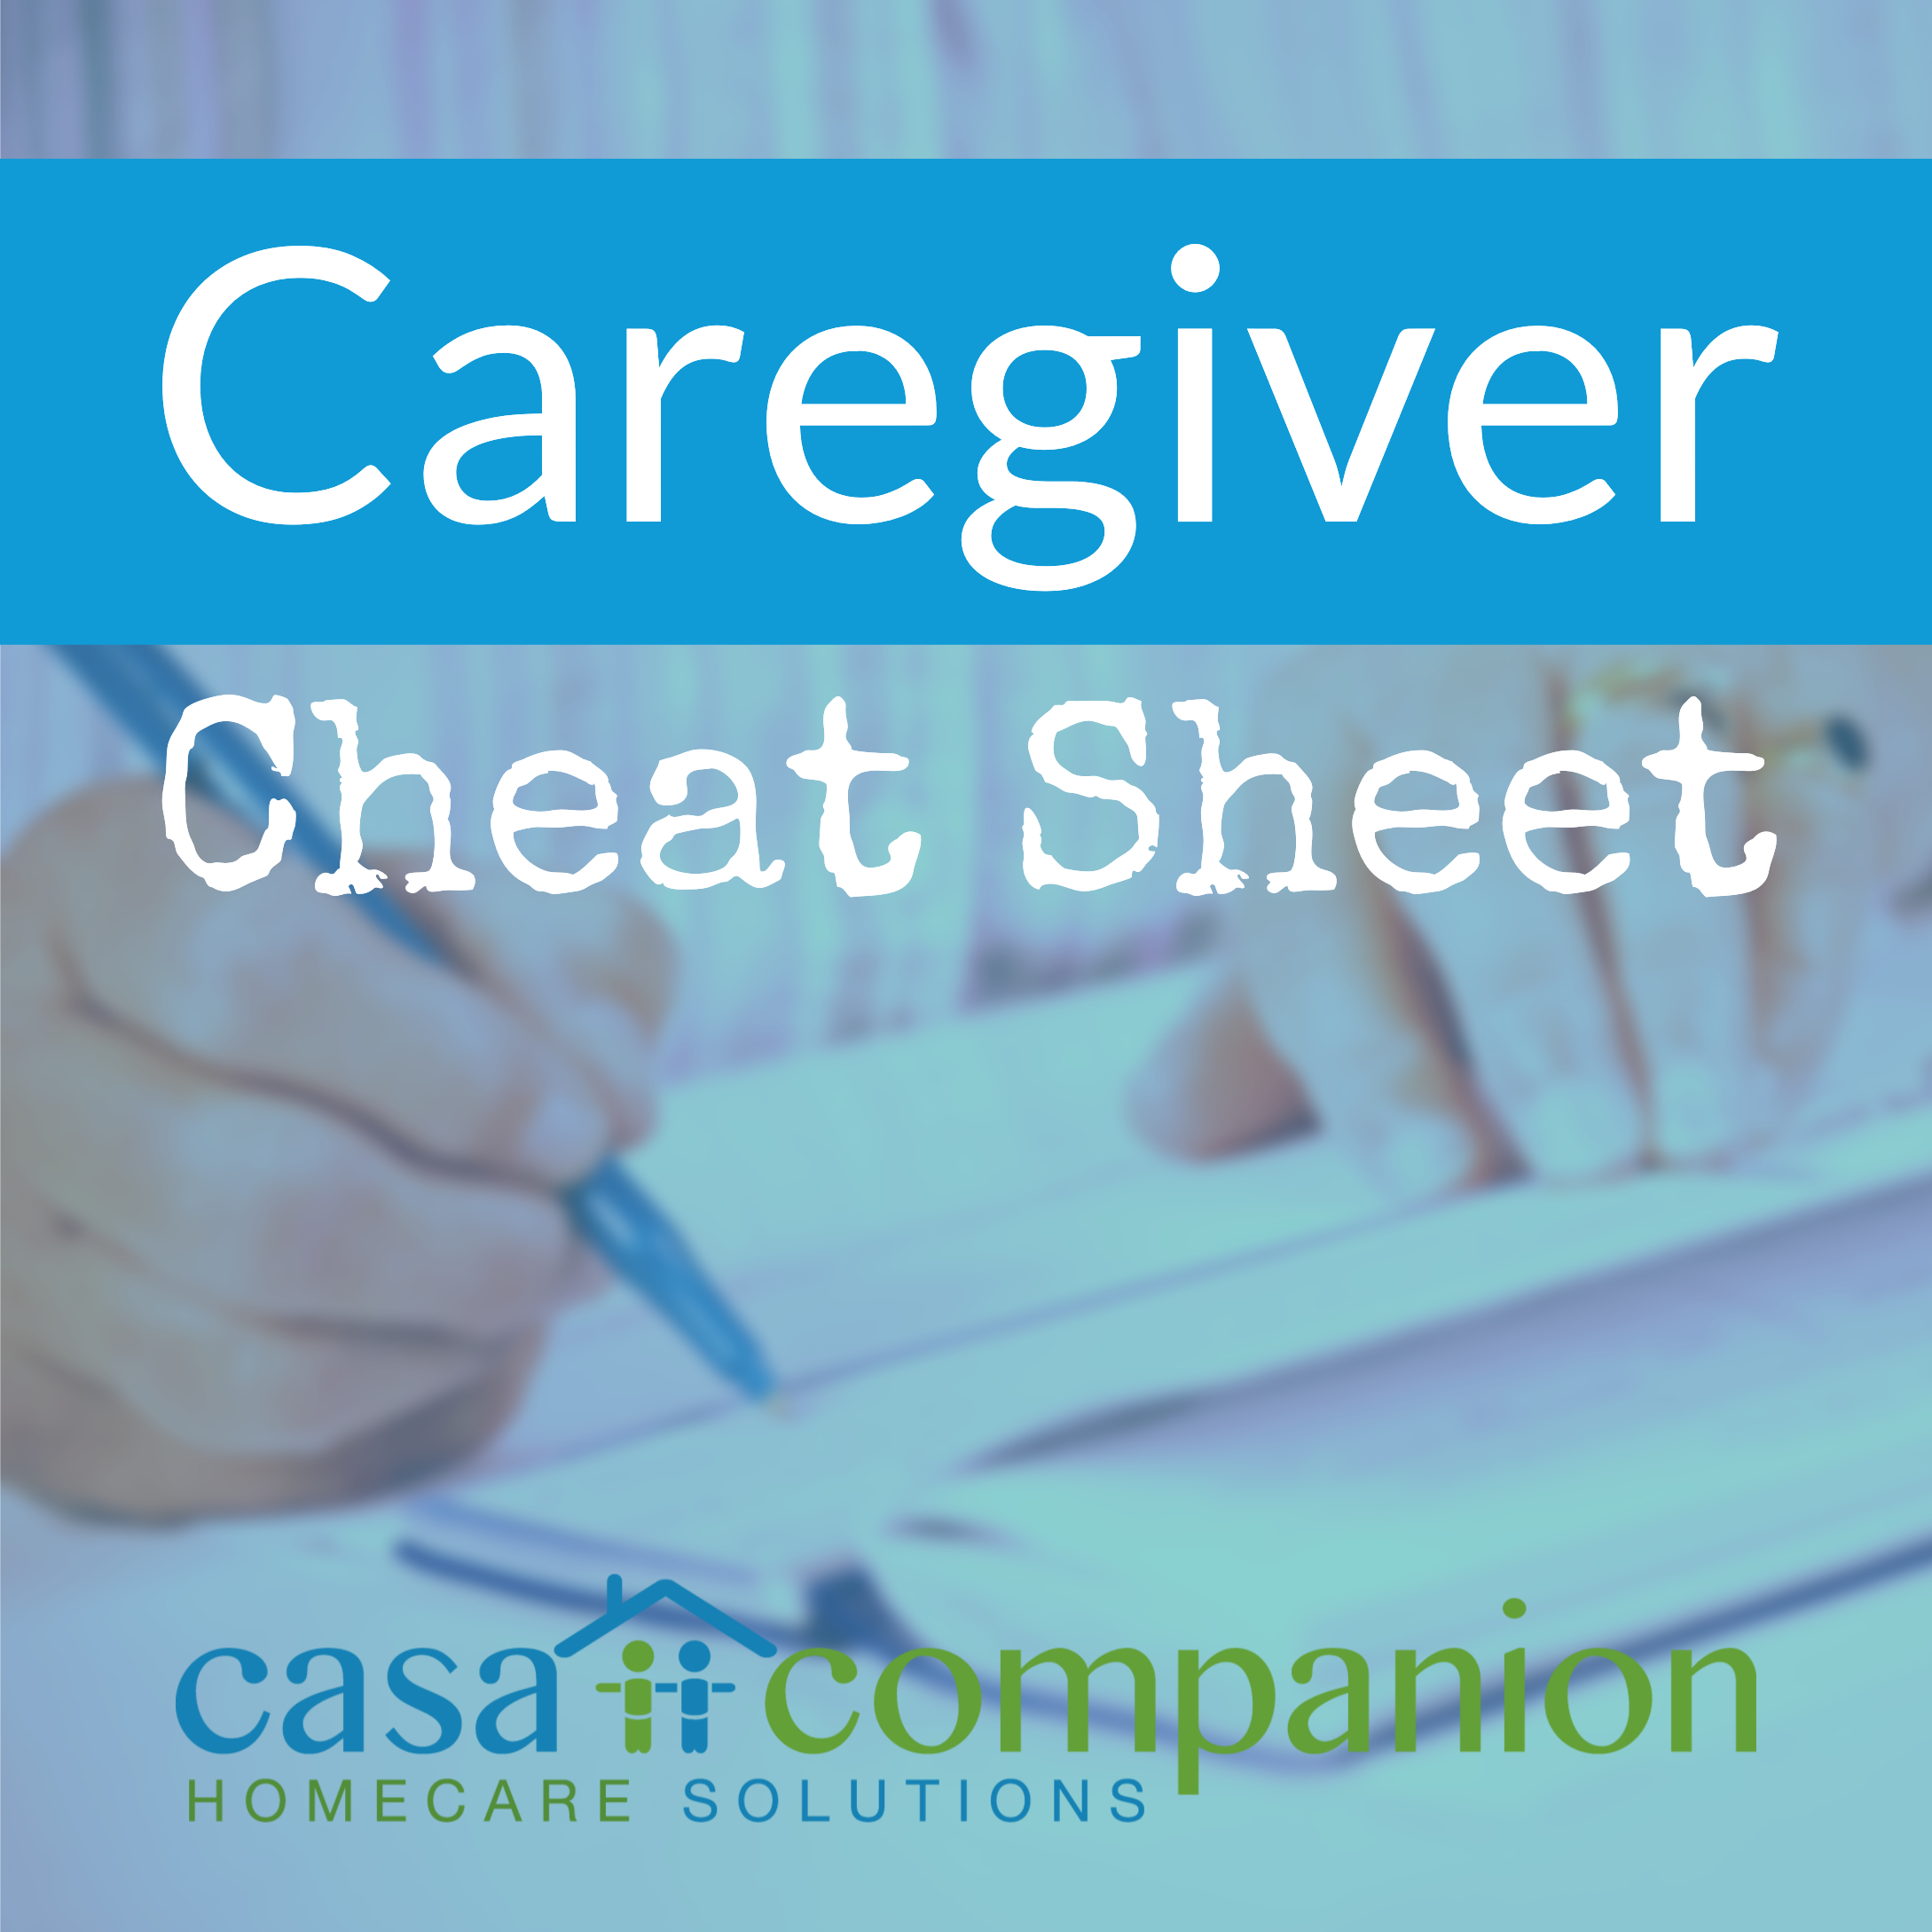 Casa-Caregiver-Cheat-Sheet-logo-58ae0771e3c5e (1)